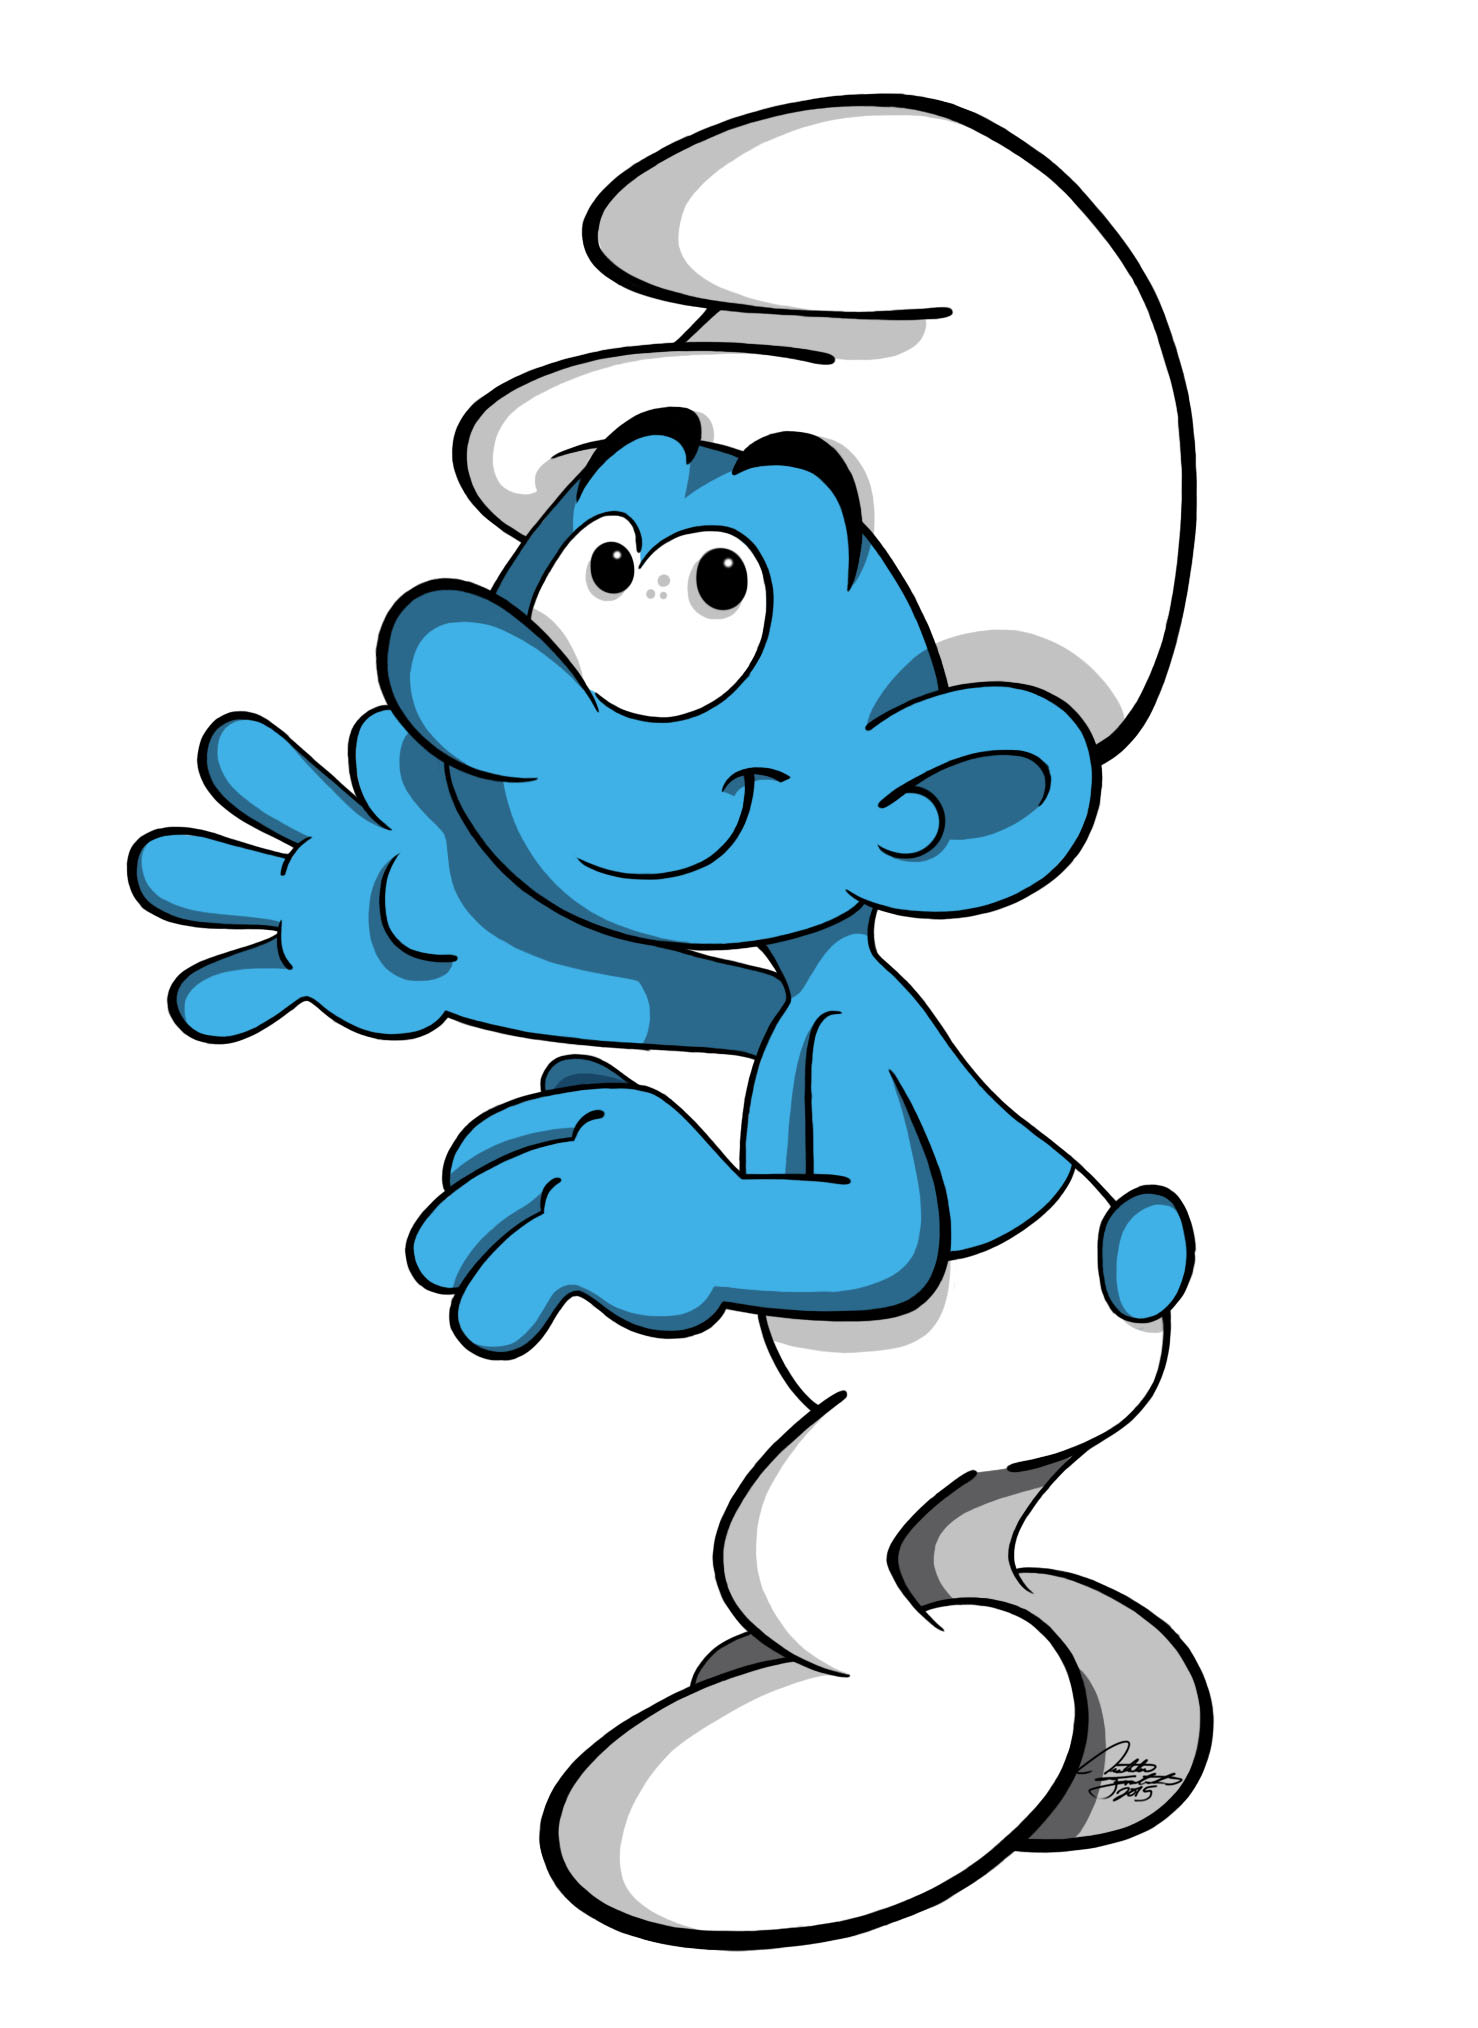 Smurfs (LD Stories) | Smurfs Fanon Wiki | Fandom powered by Wikia